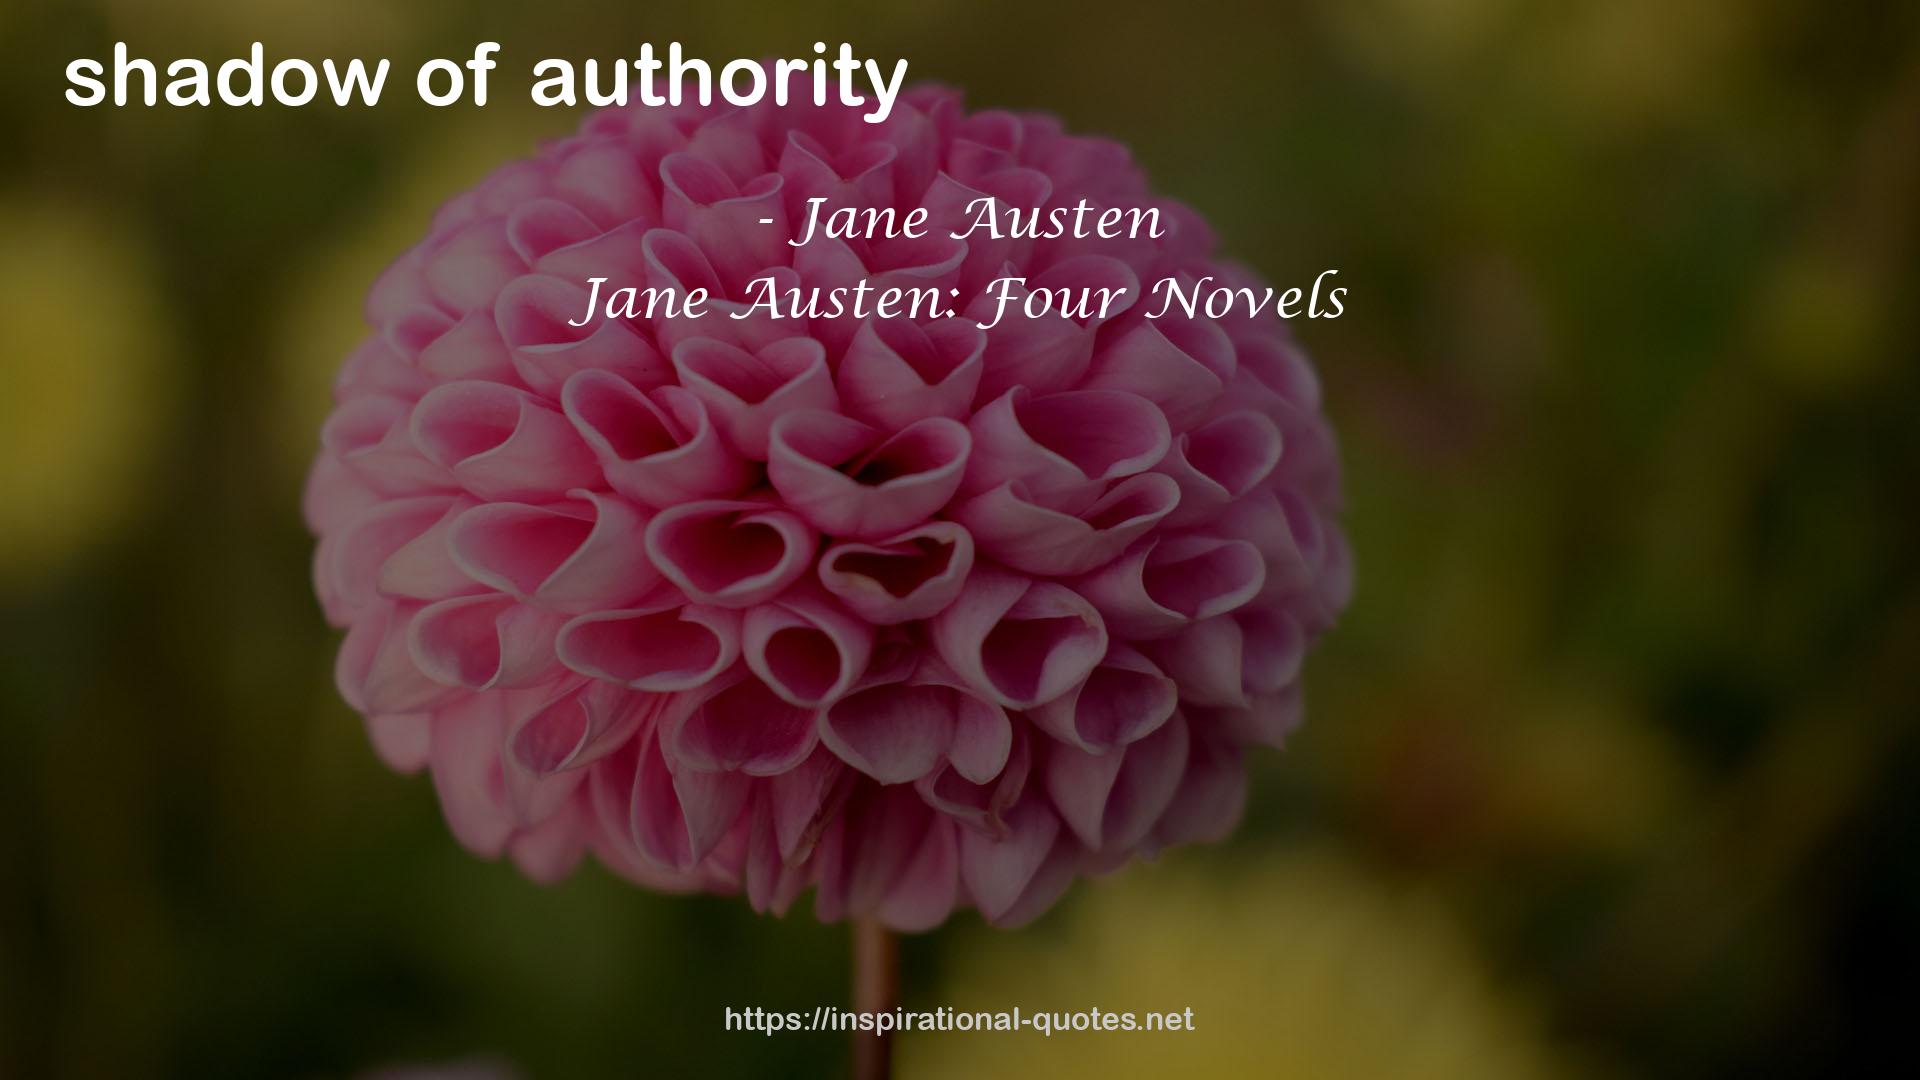 Jane Austen: Four Novels QUOTES